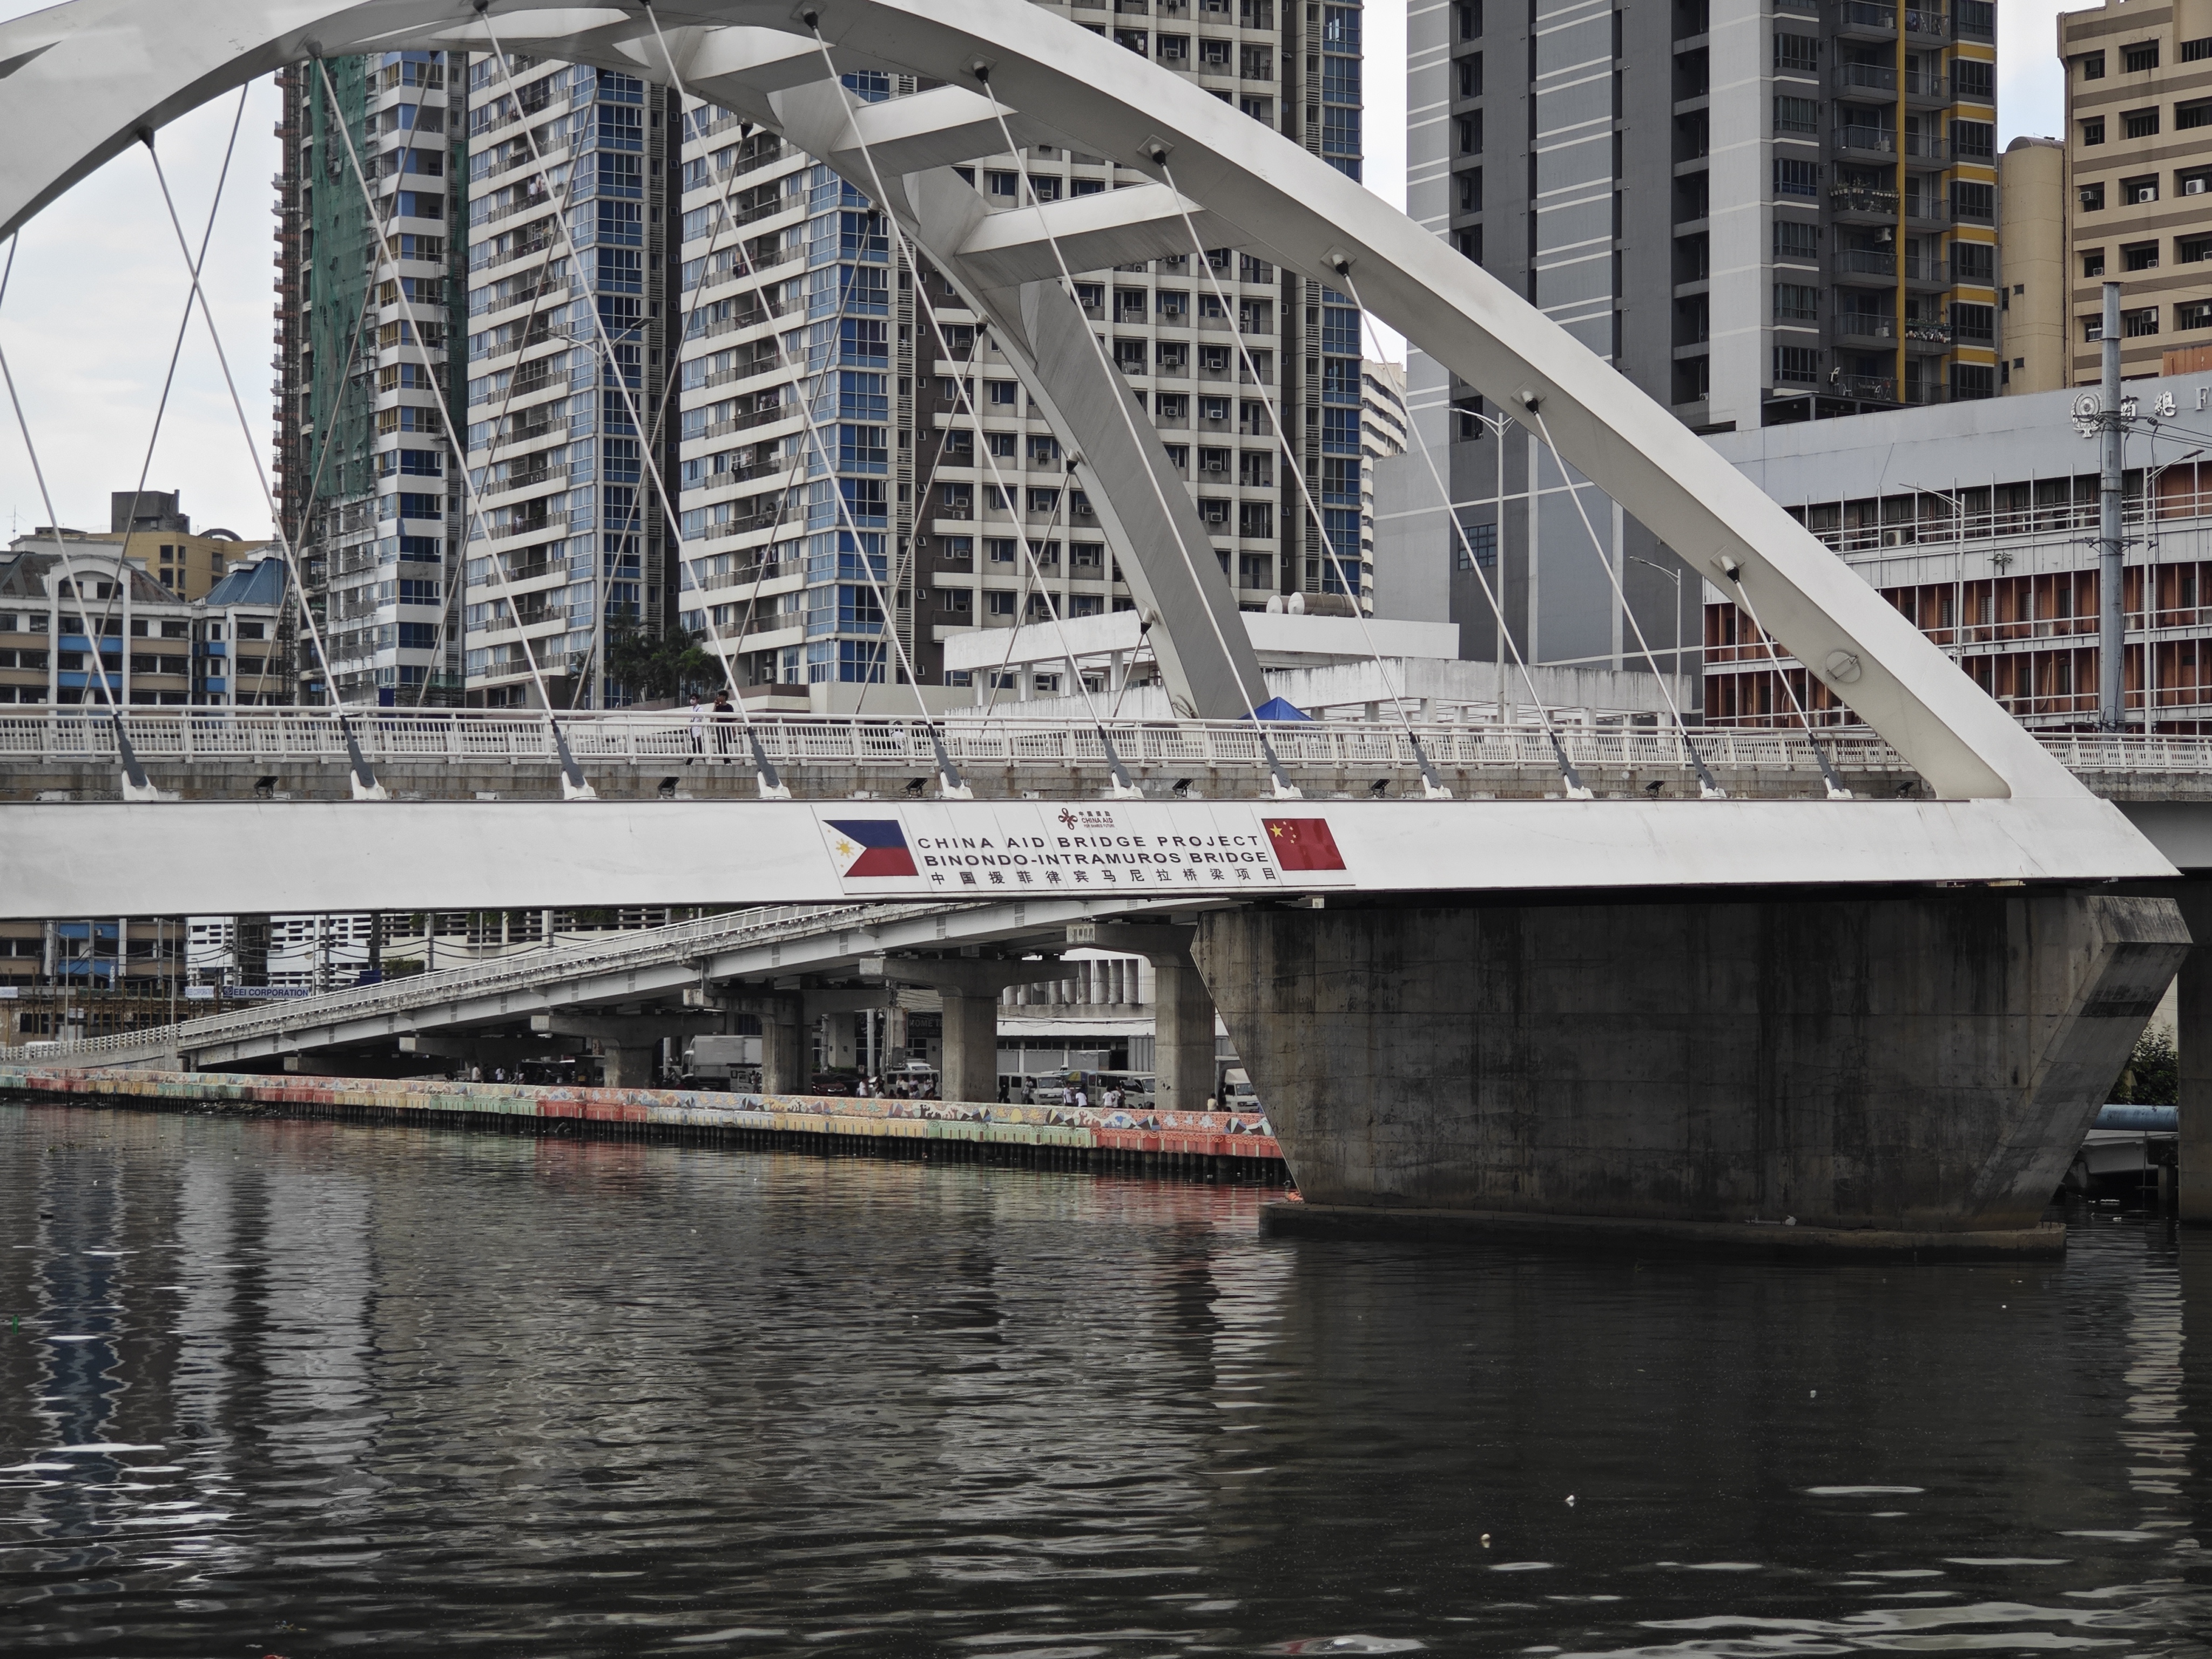 中国为菲律宾援建的桥梁项目。马尼拉堪称亚洲最堵车的城市之一，市内交通状况一直为当地民众诟病，中国援建的桥梁项目对当地交通状况改善起到了促进作用。（樊巍摄）